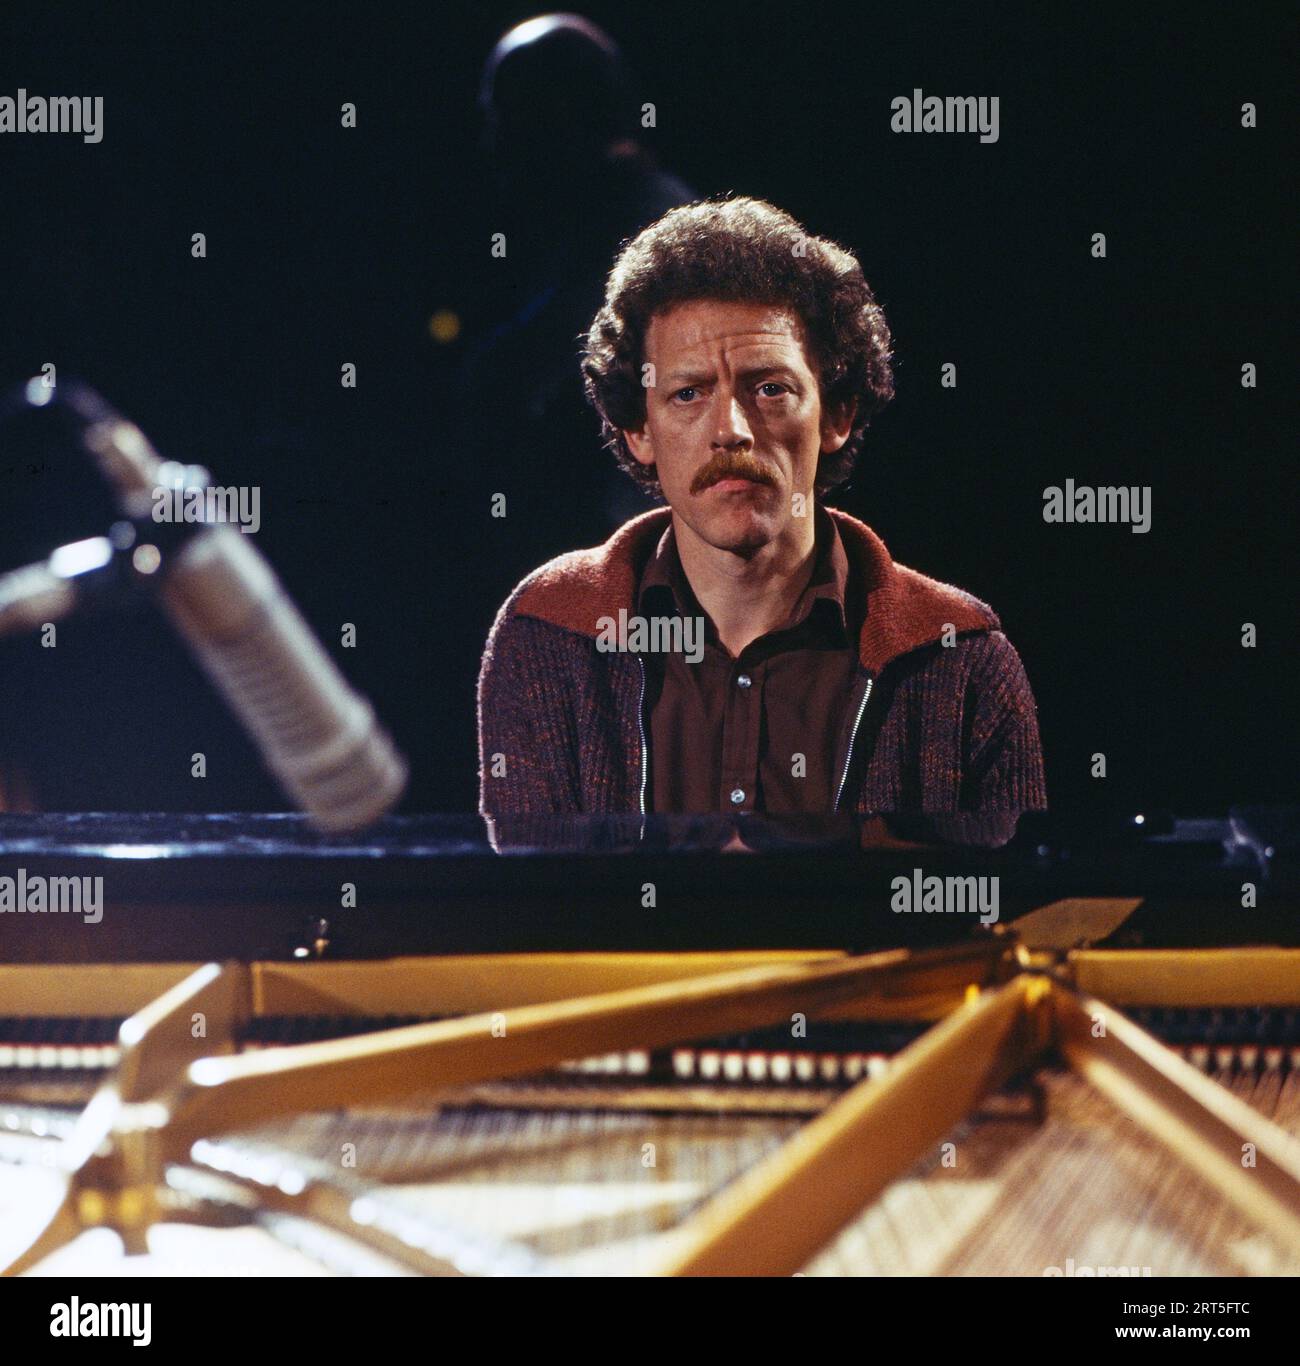 John Taylor, britischer Jazzpianist, bei einem Auftritt, Deutschland um 1977. Stock Photo